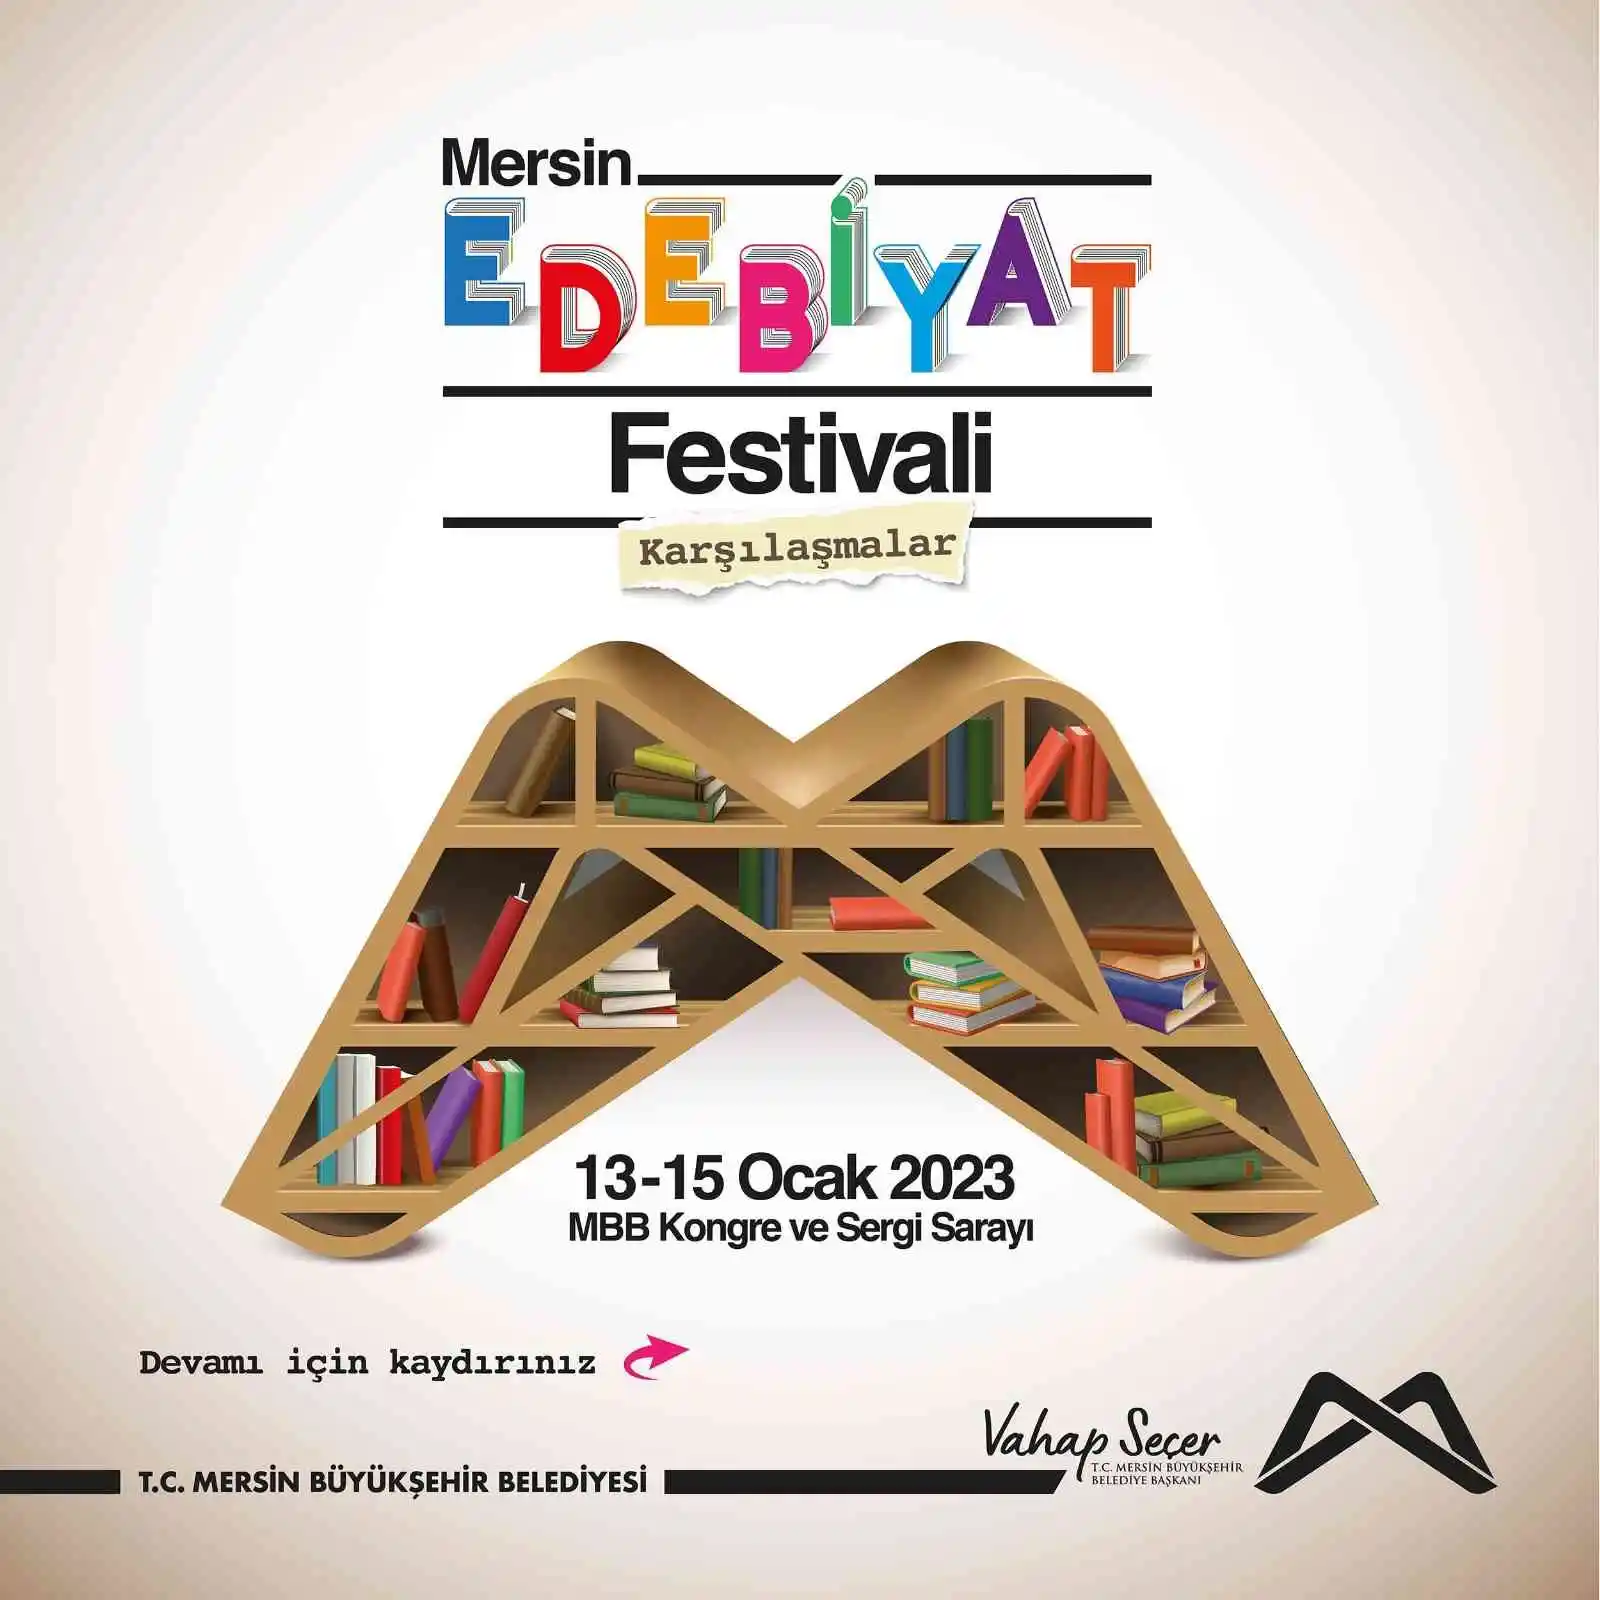 Mersin'de Edebiyat Festivali
